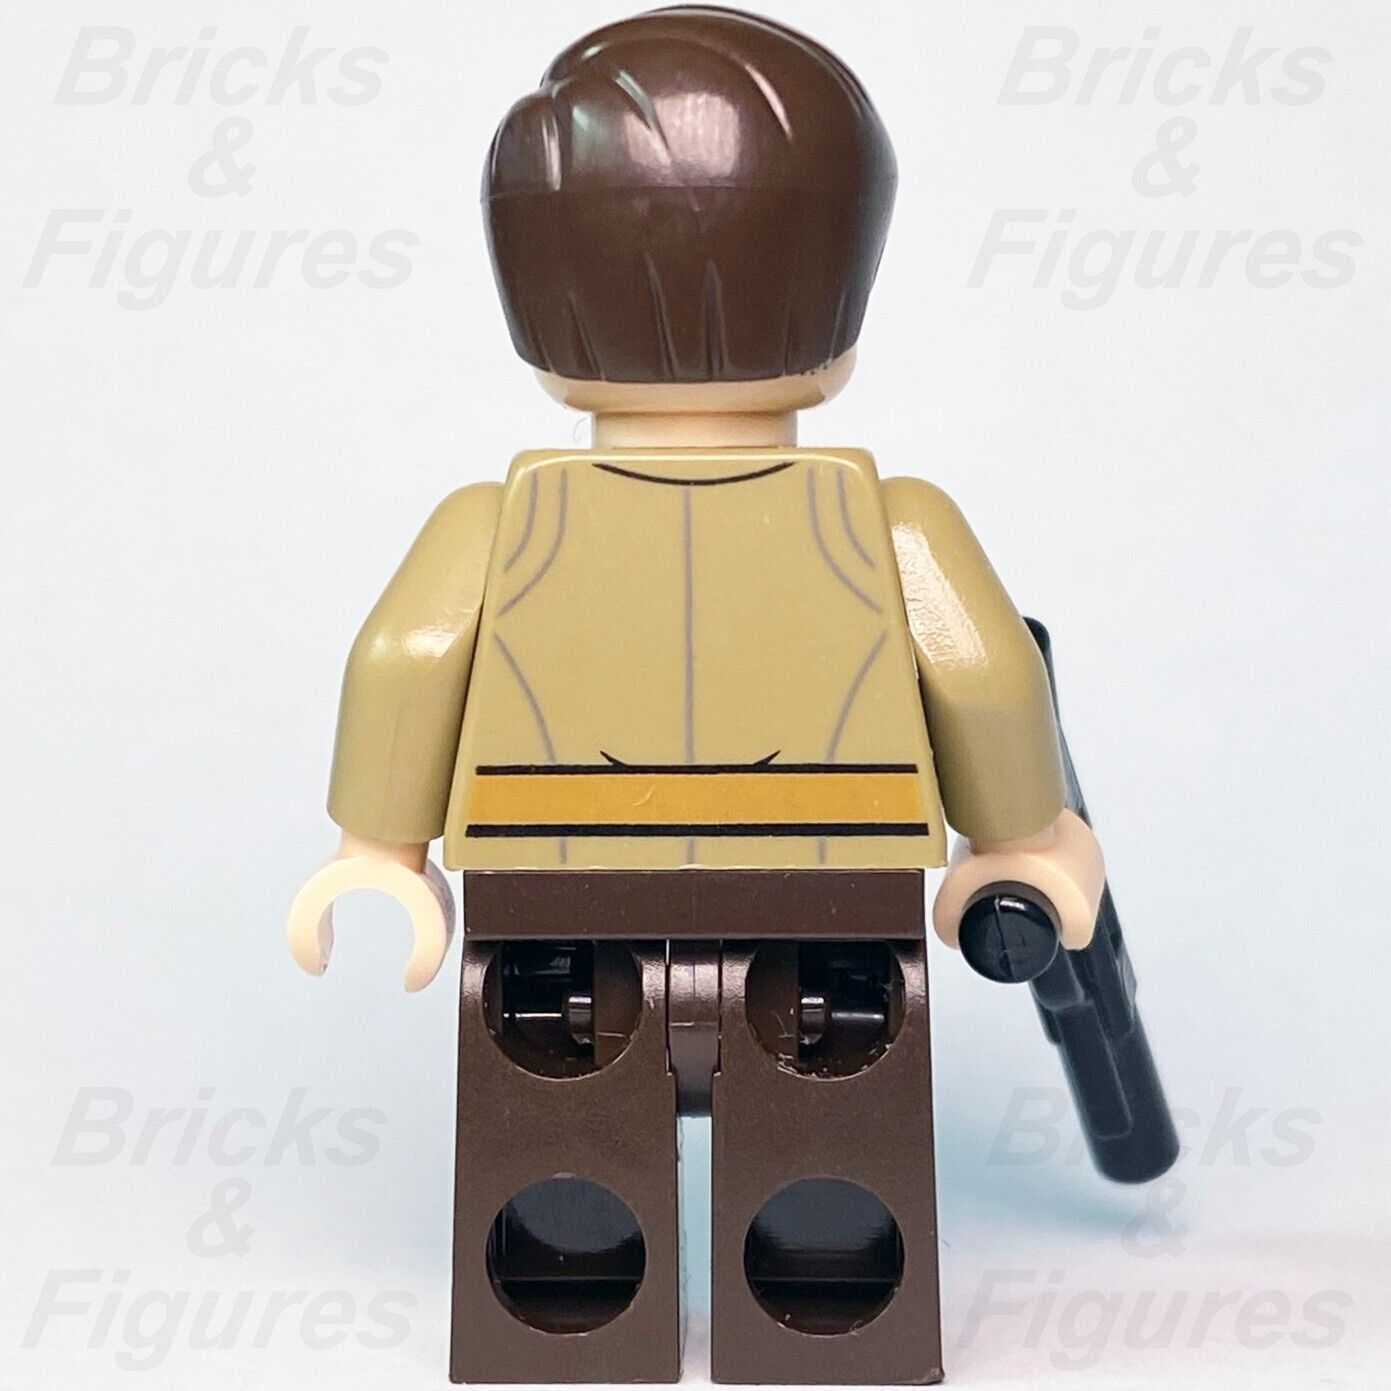 LEGO Star Wars Resistance Officer Minifigure Major Brance 75184 sw0876 Trooper - Bricks & Figures